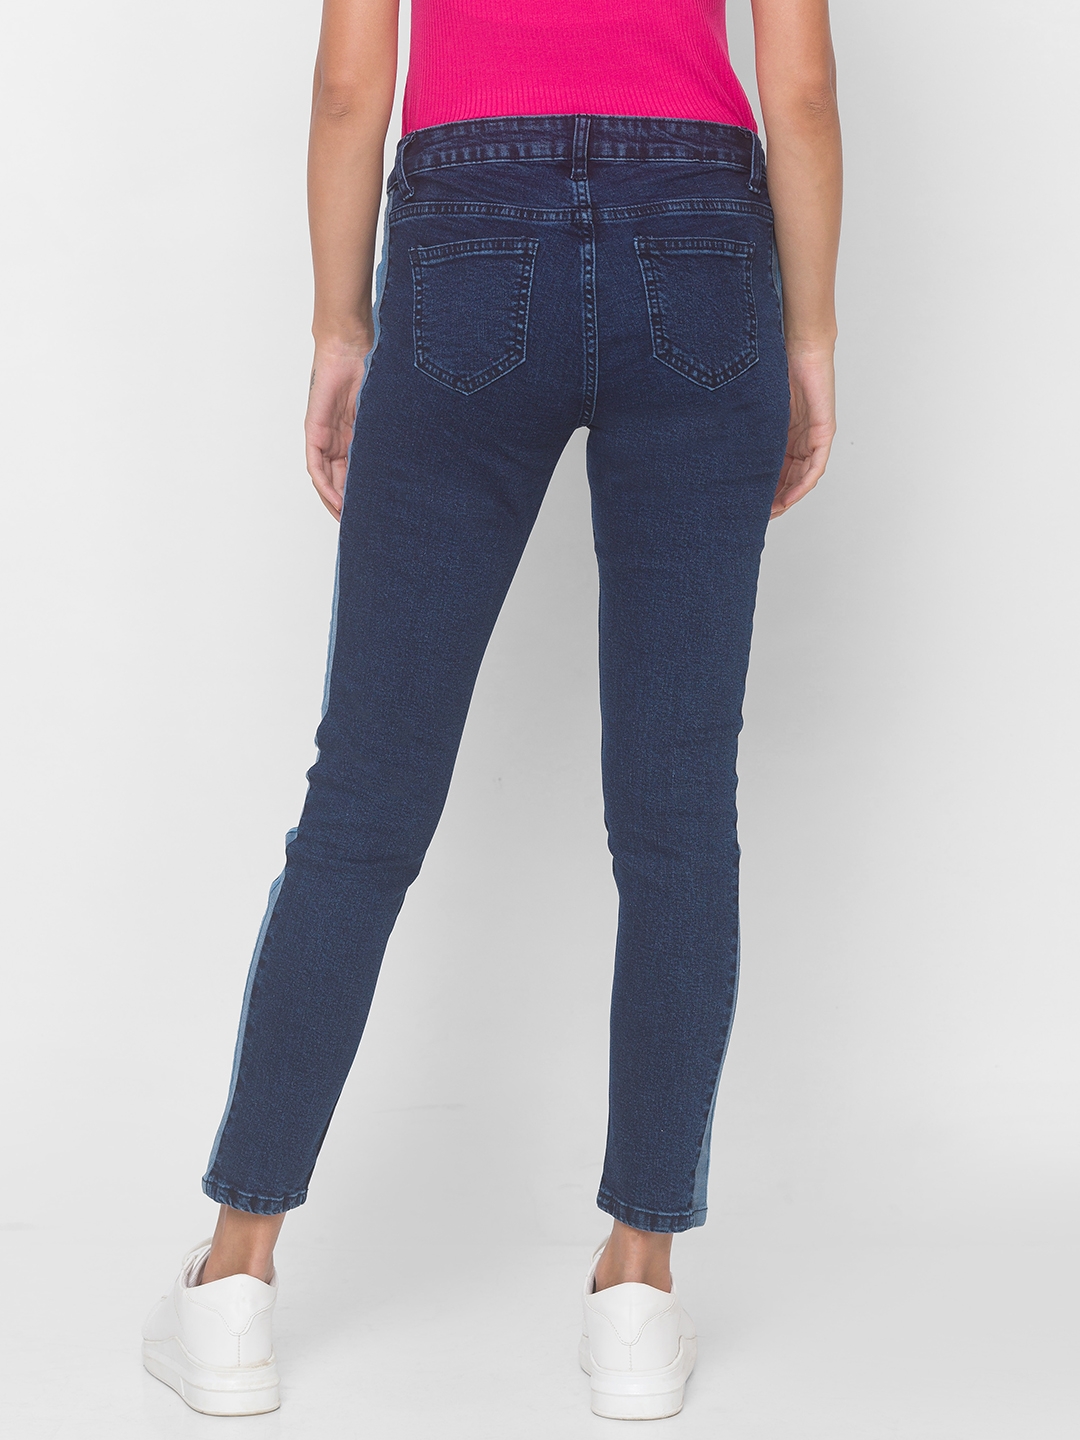 globus | Women's Blue Cotton Solid Slim Jeans 2